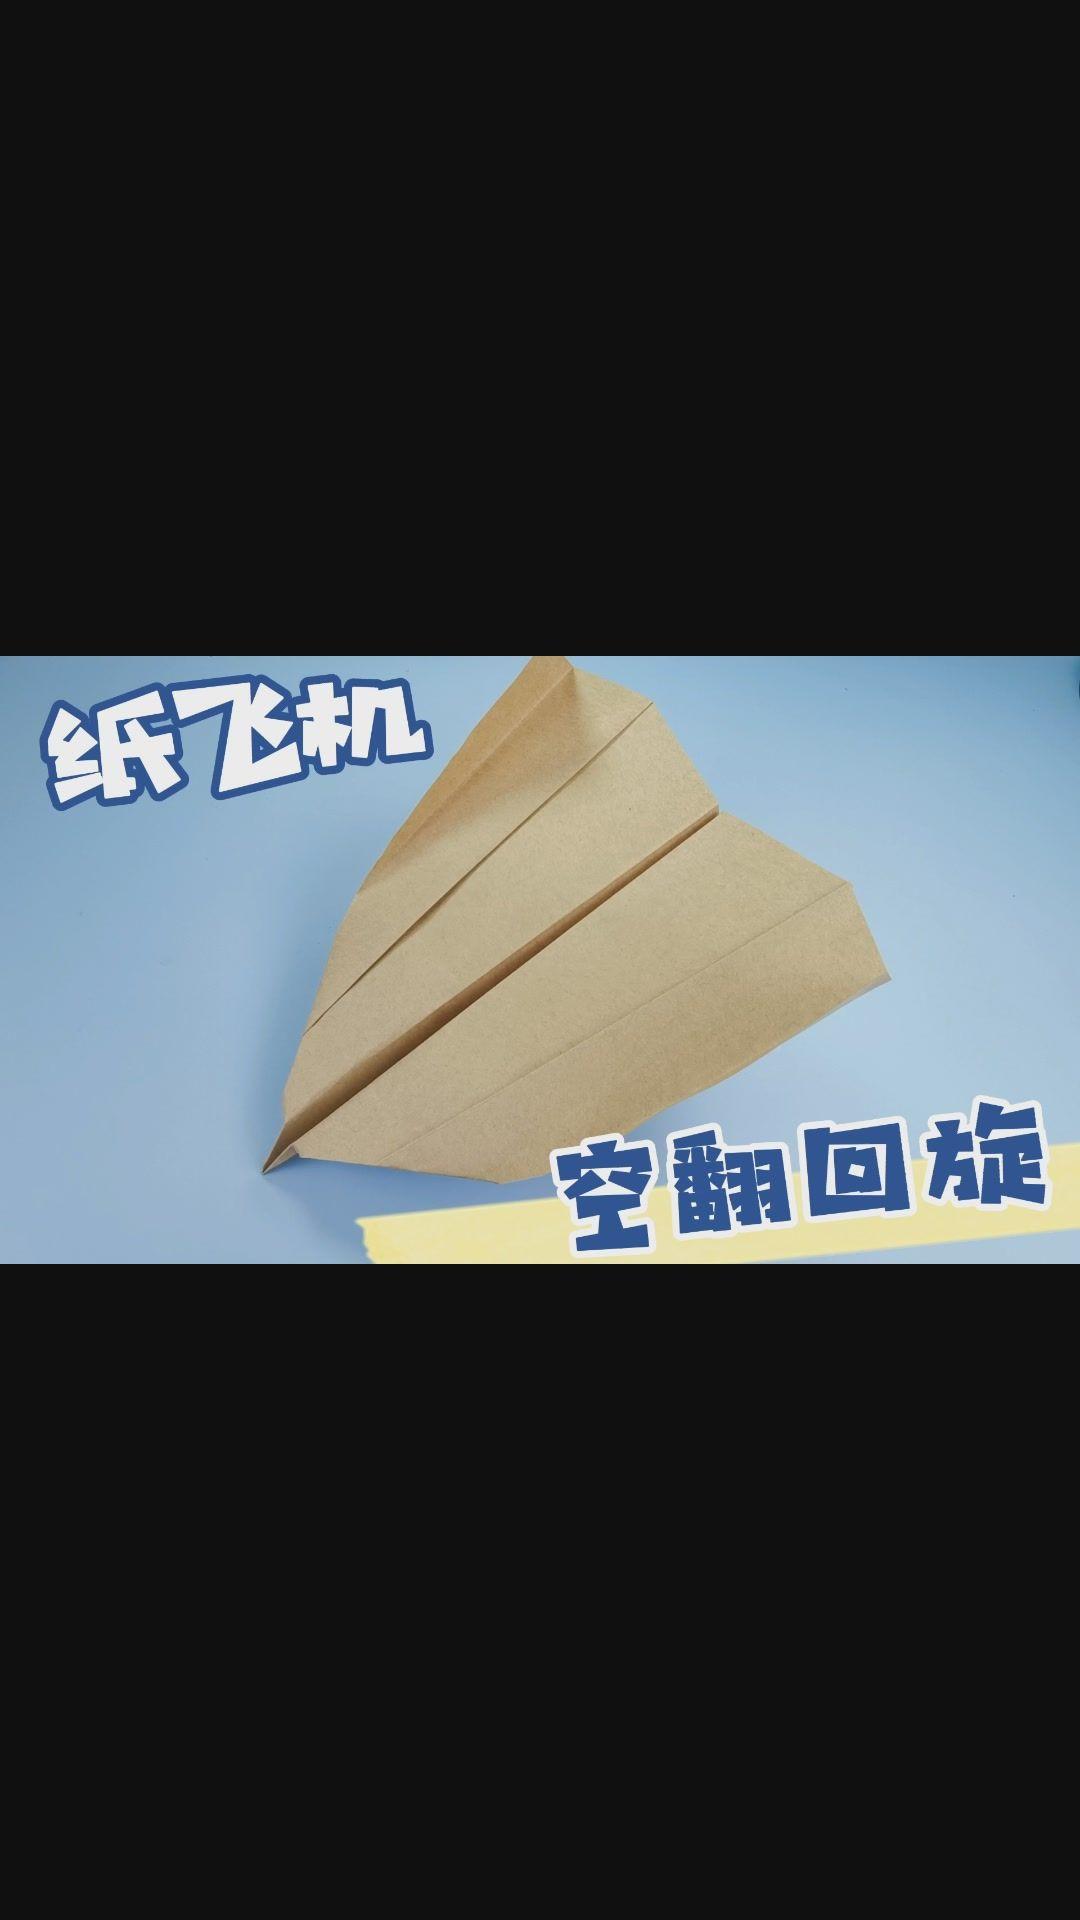 播放纸飞机的视频特别简单_播放纸飞机的视频特别简单怎么办